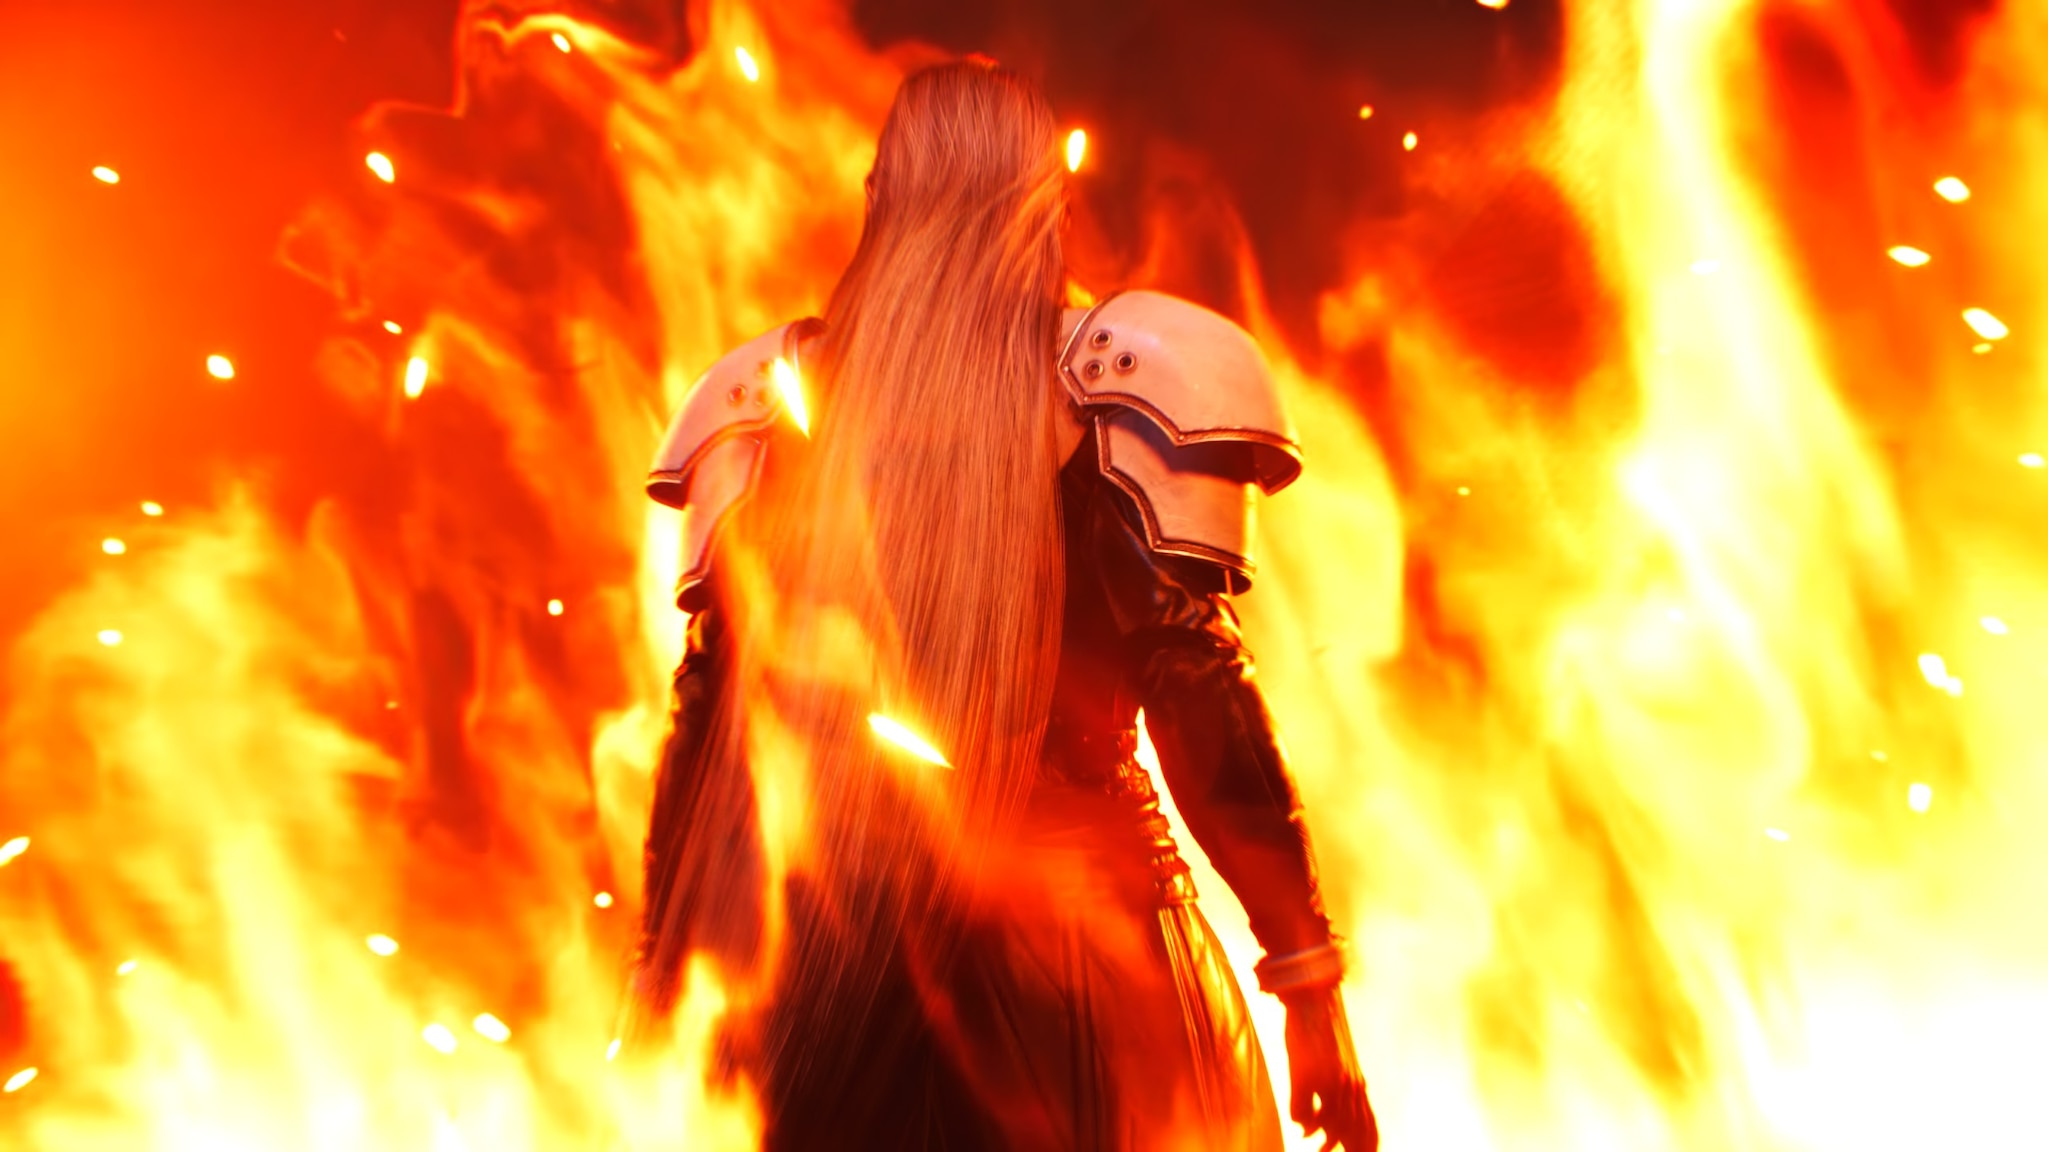 Final Fantasy VII: Hé lộ cách chăm sóc tóc suôn mượt, óng ả như Sephiroth